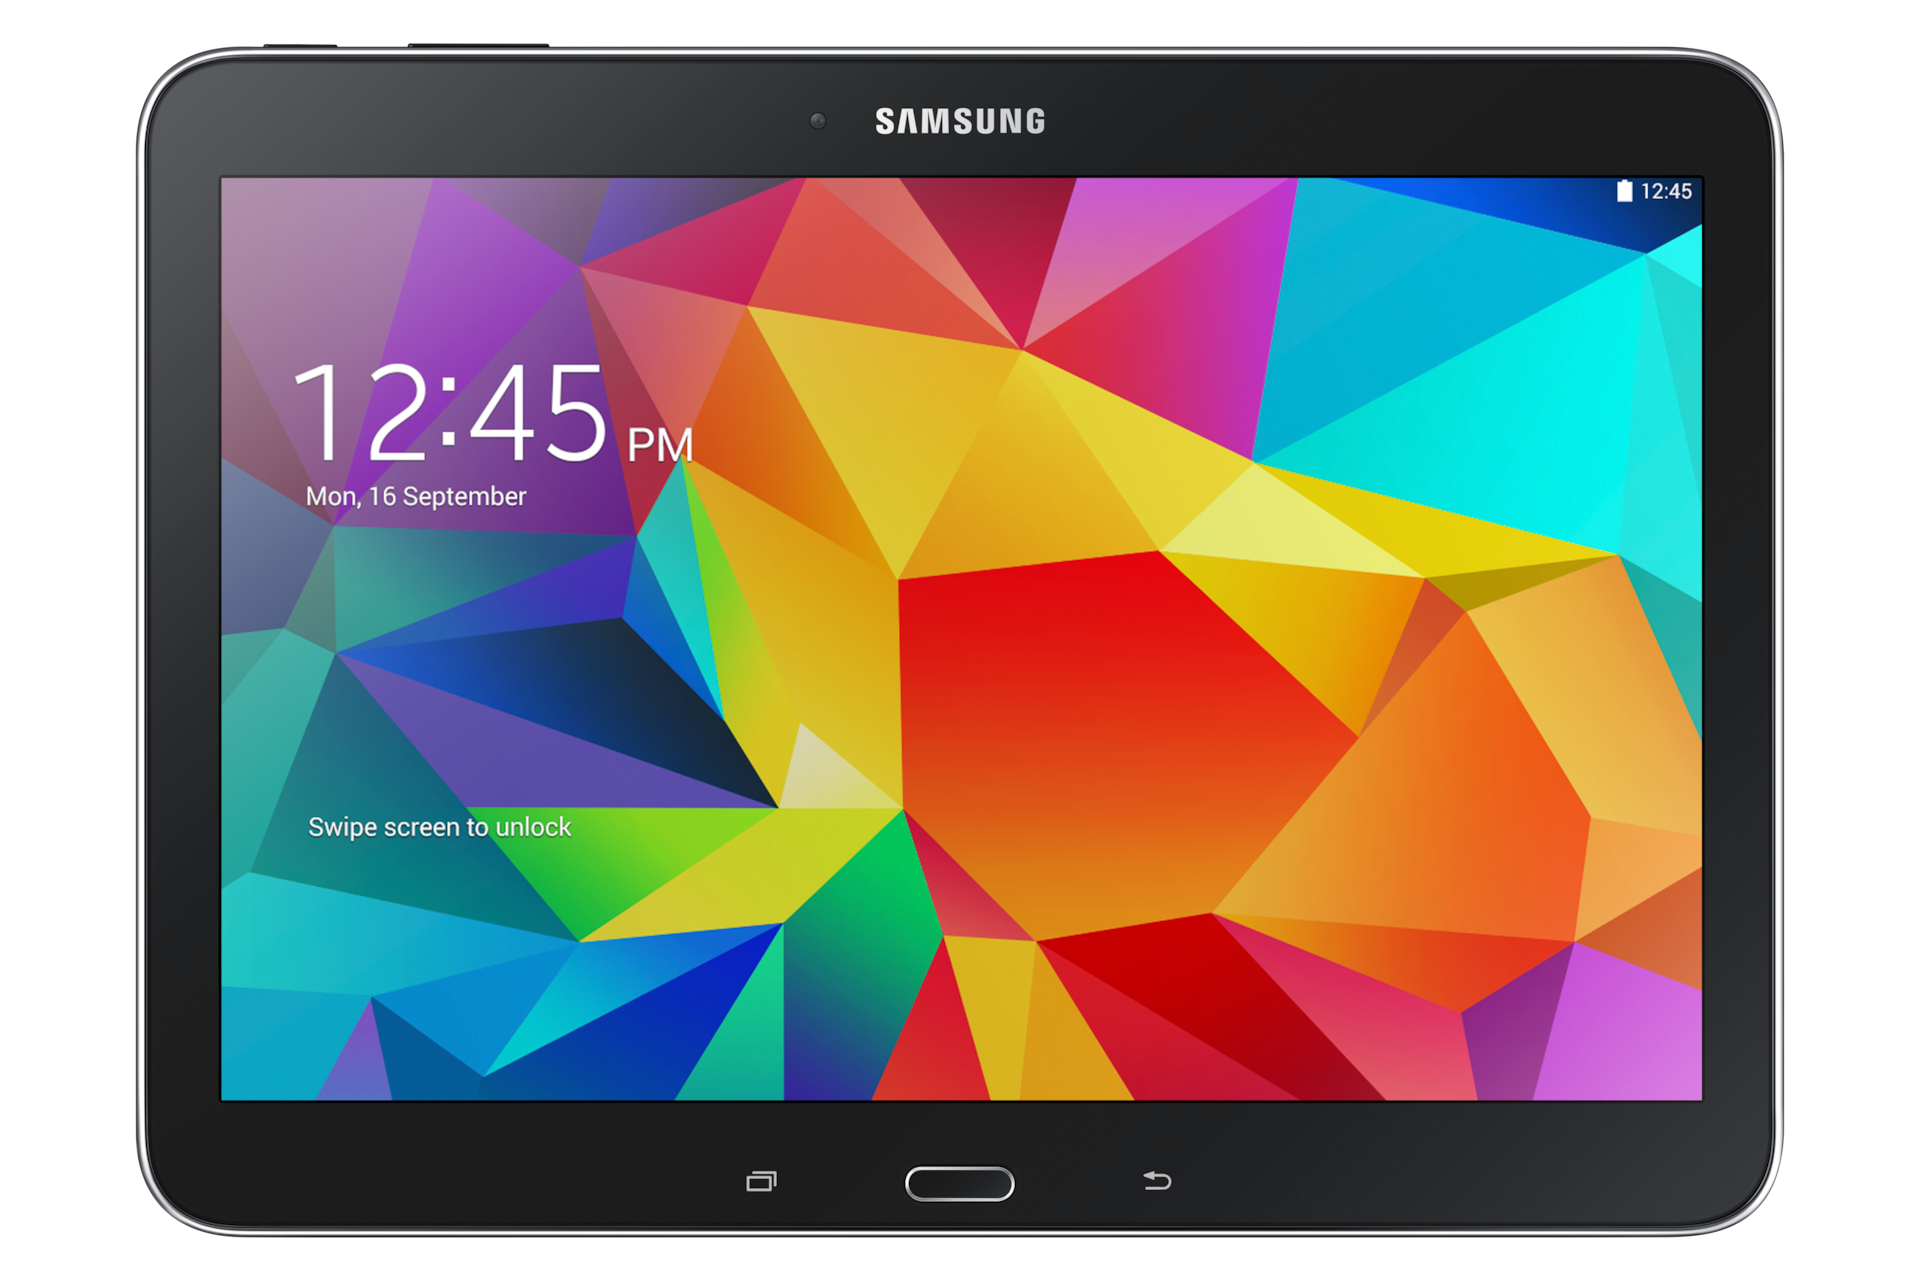 Samsung Galaxy Tab 4 10.1 Samsung Latinoamérica